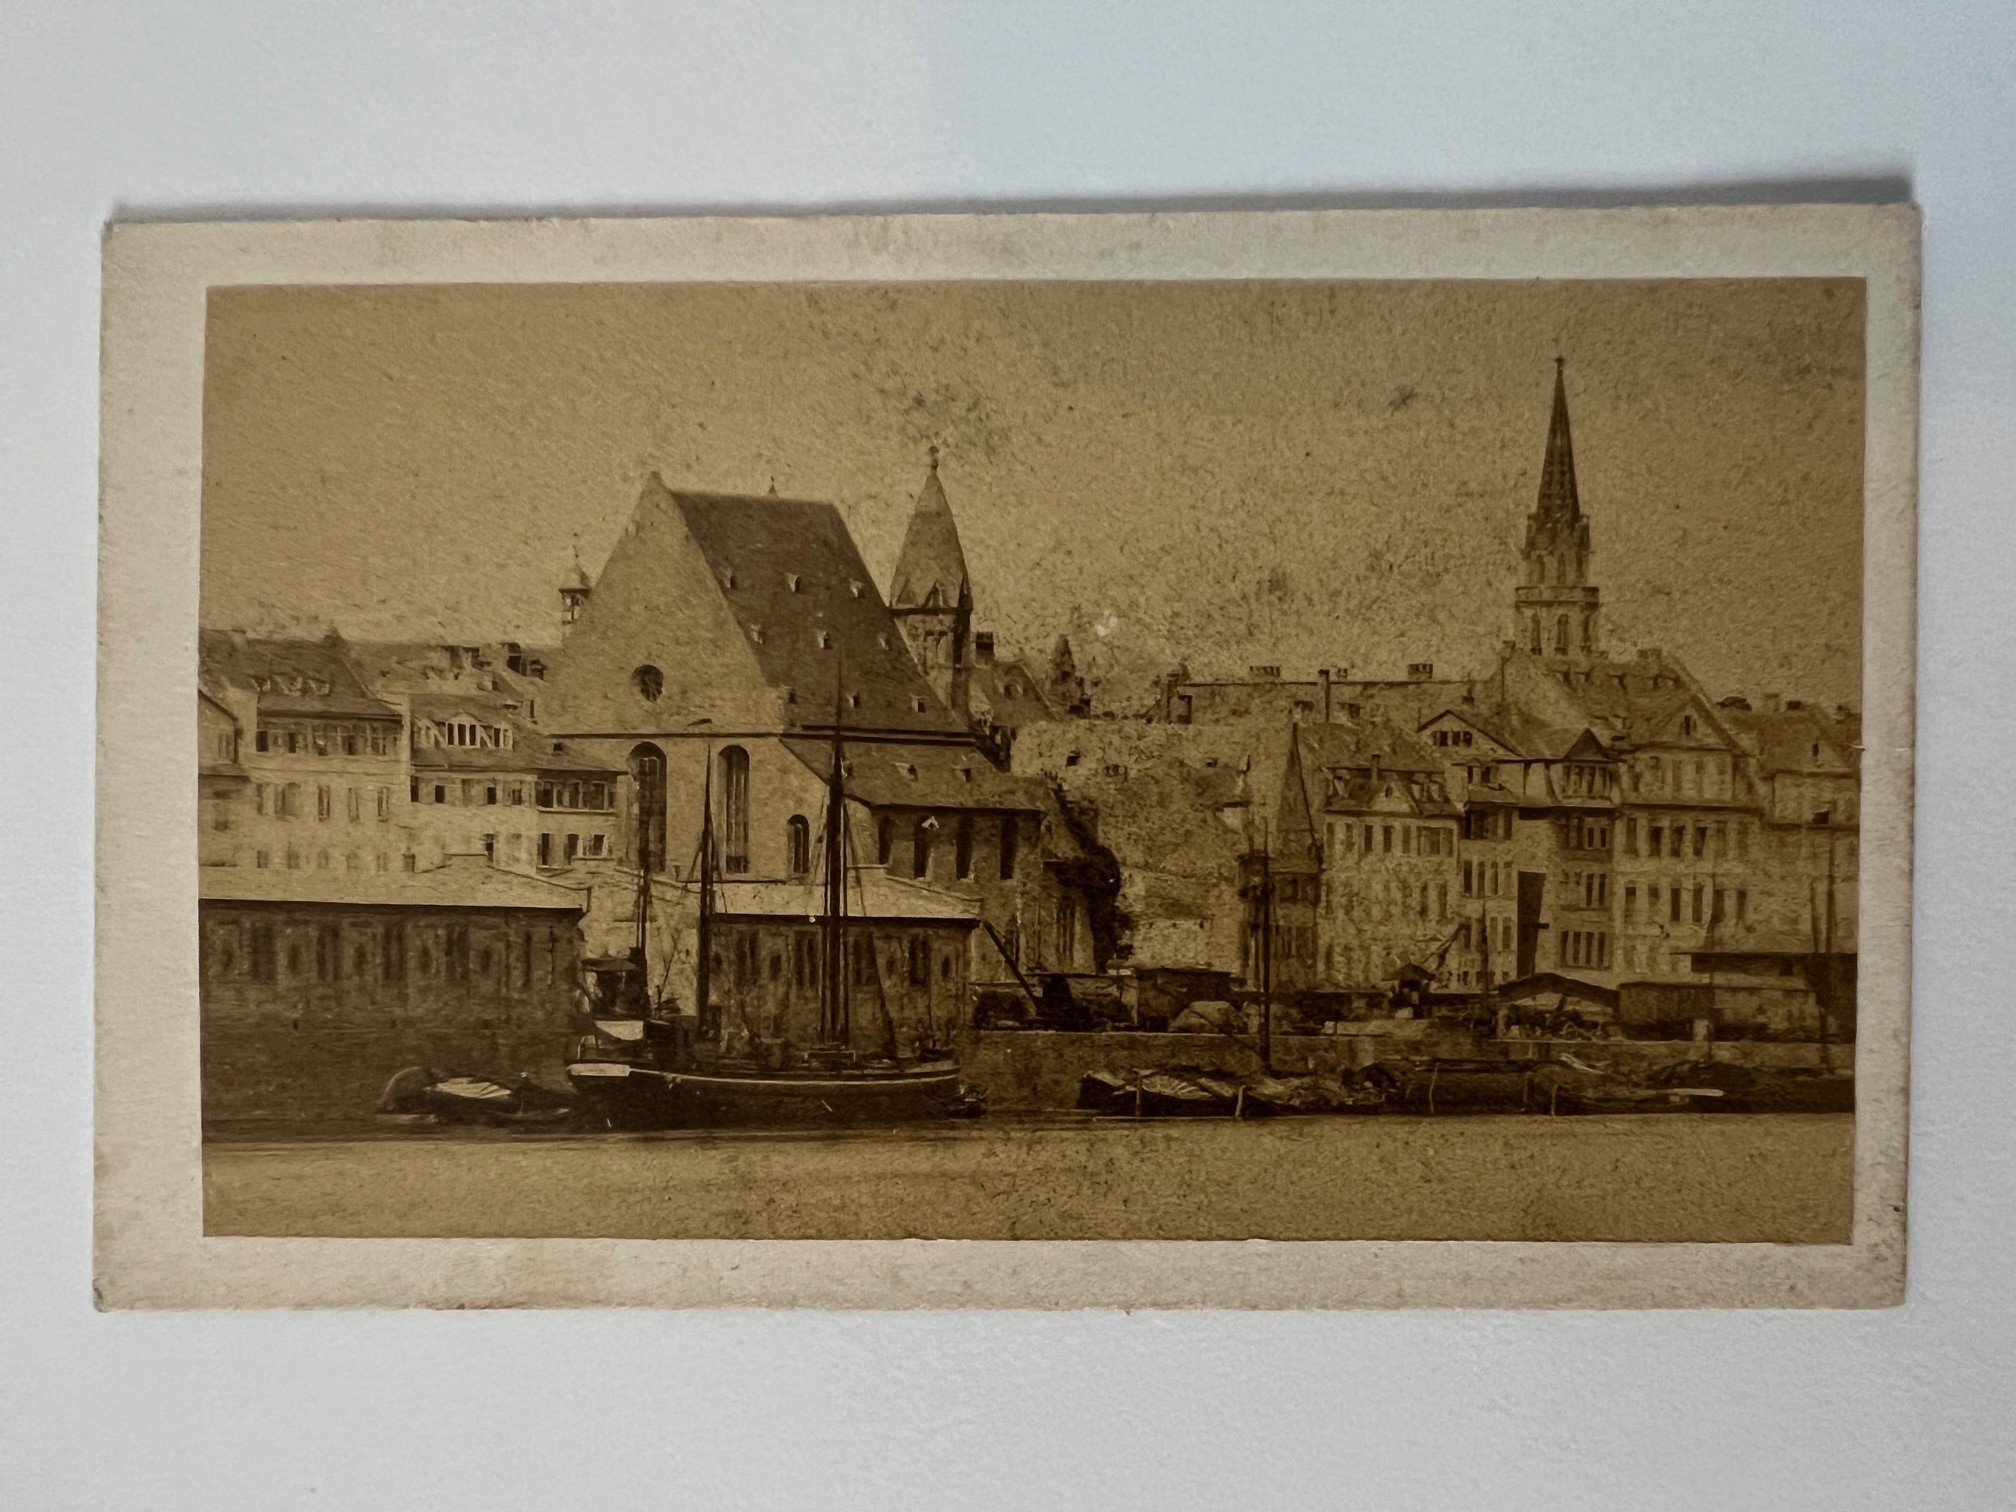 CdV, Unbekannter Fotograf, Frankfurt, St. Leonhard, ca. 1868. (Taunus-Rhein-Main - Regionalgeschichtliche Sammlung Dr. Stefan Naas CC BY-NC-SA)